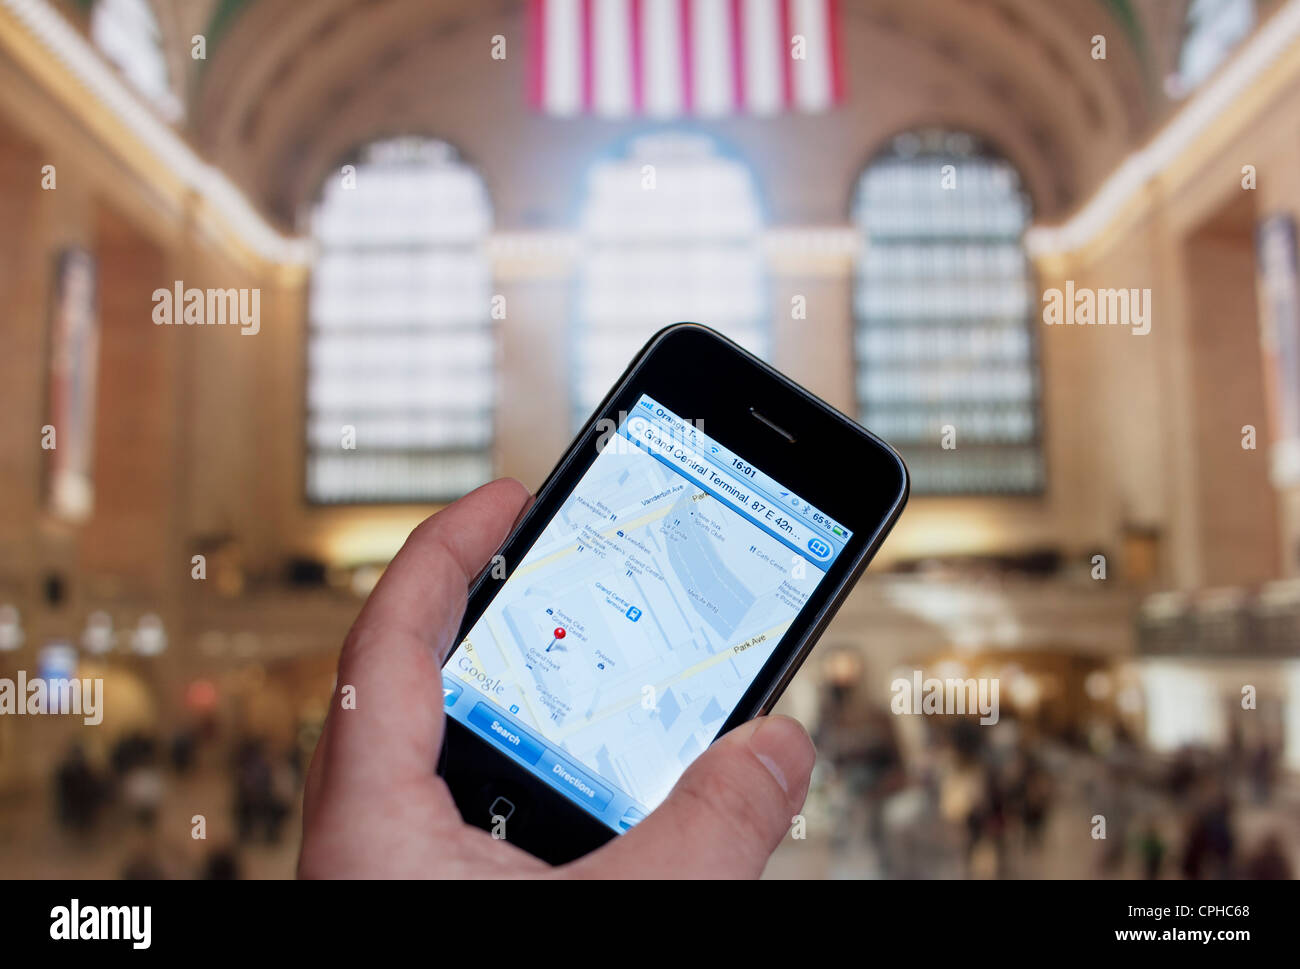 Apple iphone e alla stazione Grand Central Terminal. mano azienda mappa di orientamento della grand central station Foto Stock